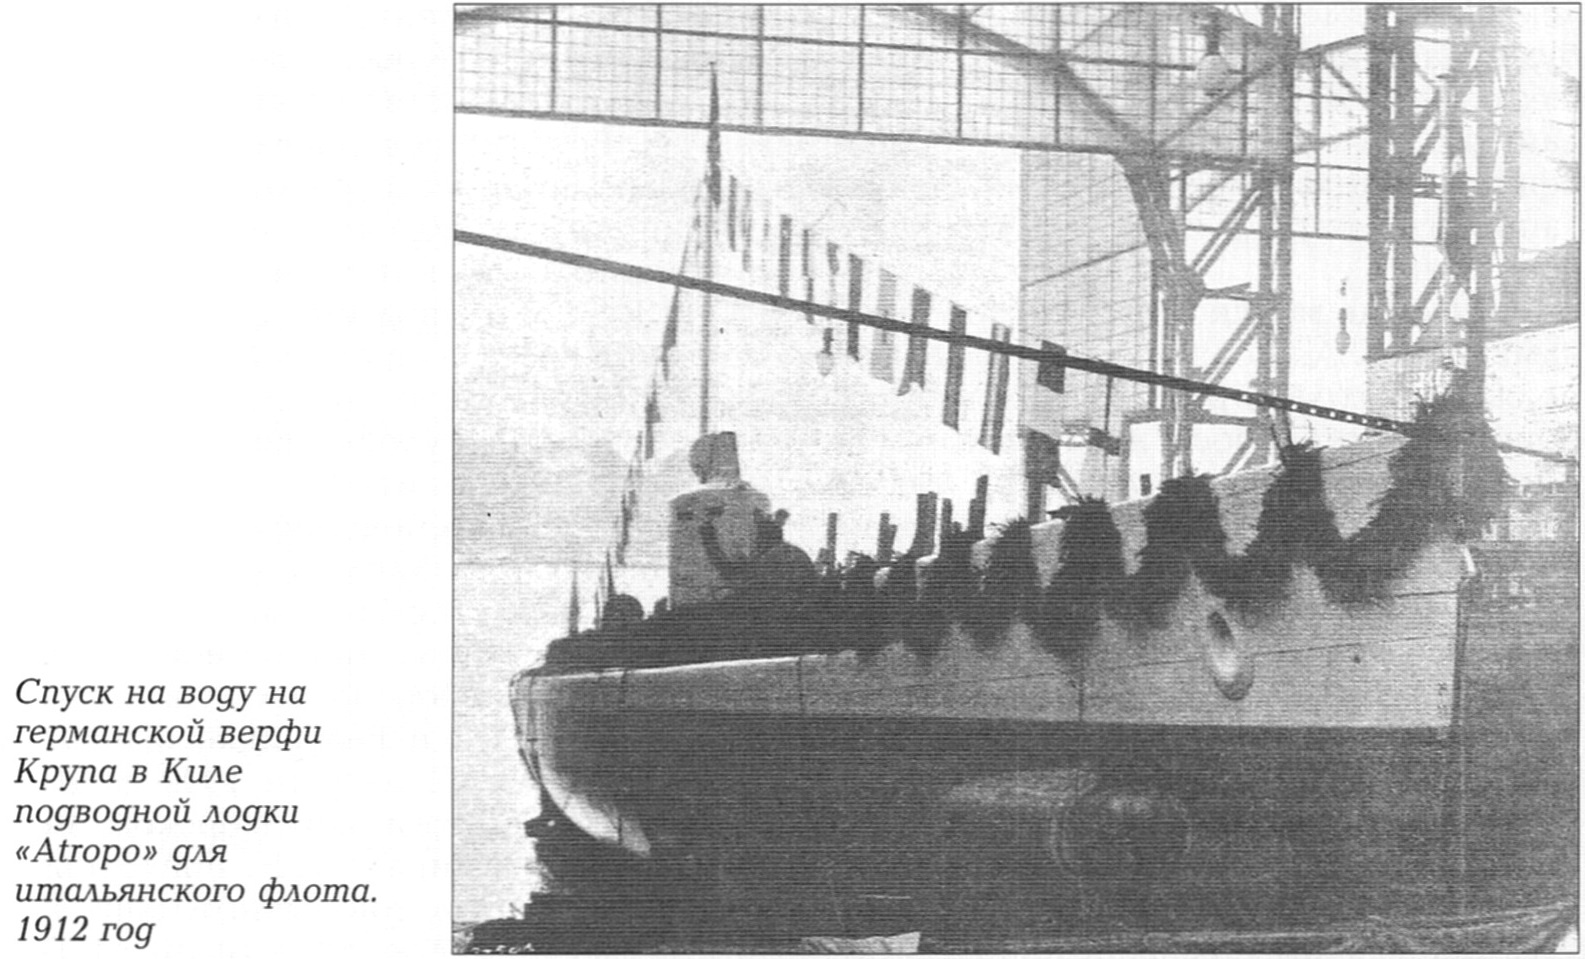 О проектировании подводных лодок в России в 1906-1911 годах